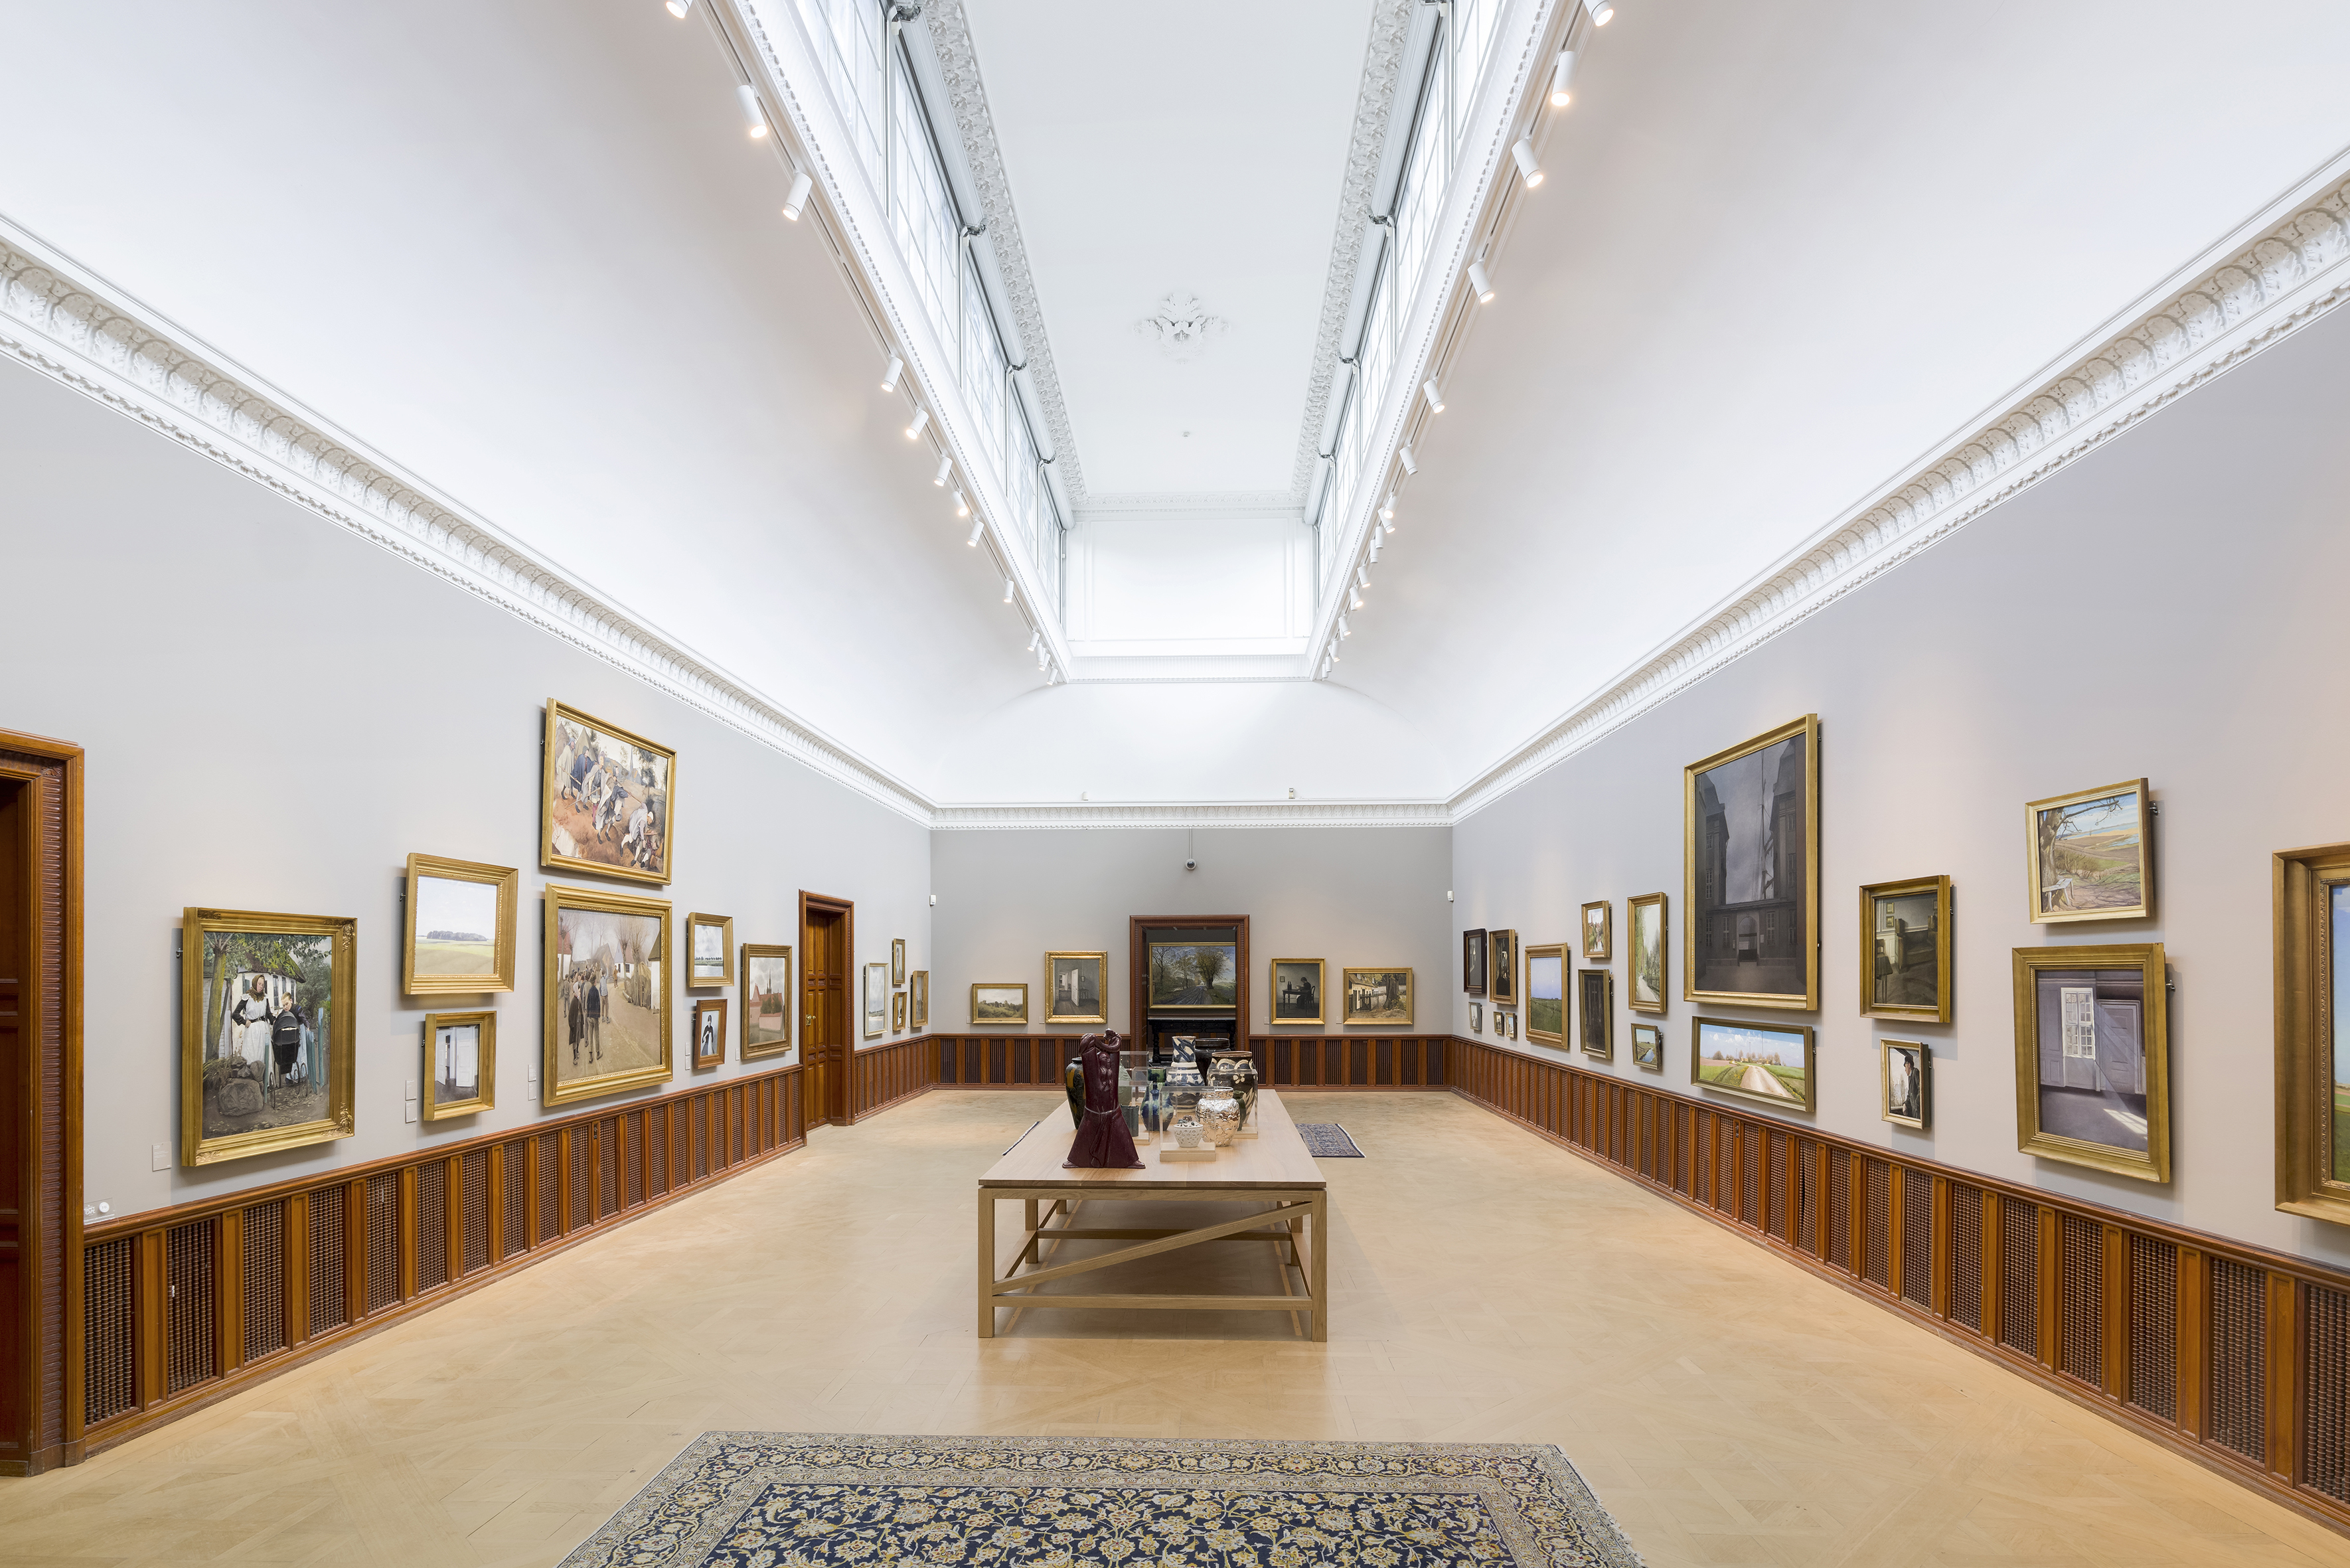 Det oprindelige galleri fra 1918 med dansk kunst